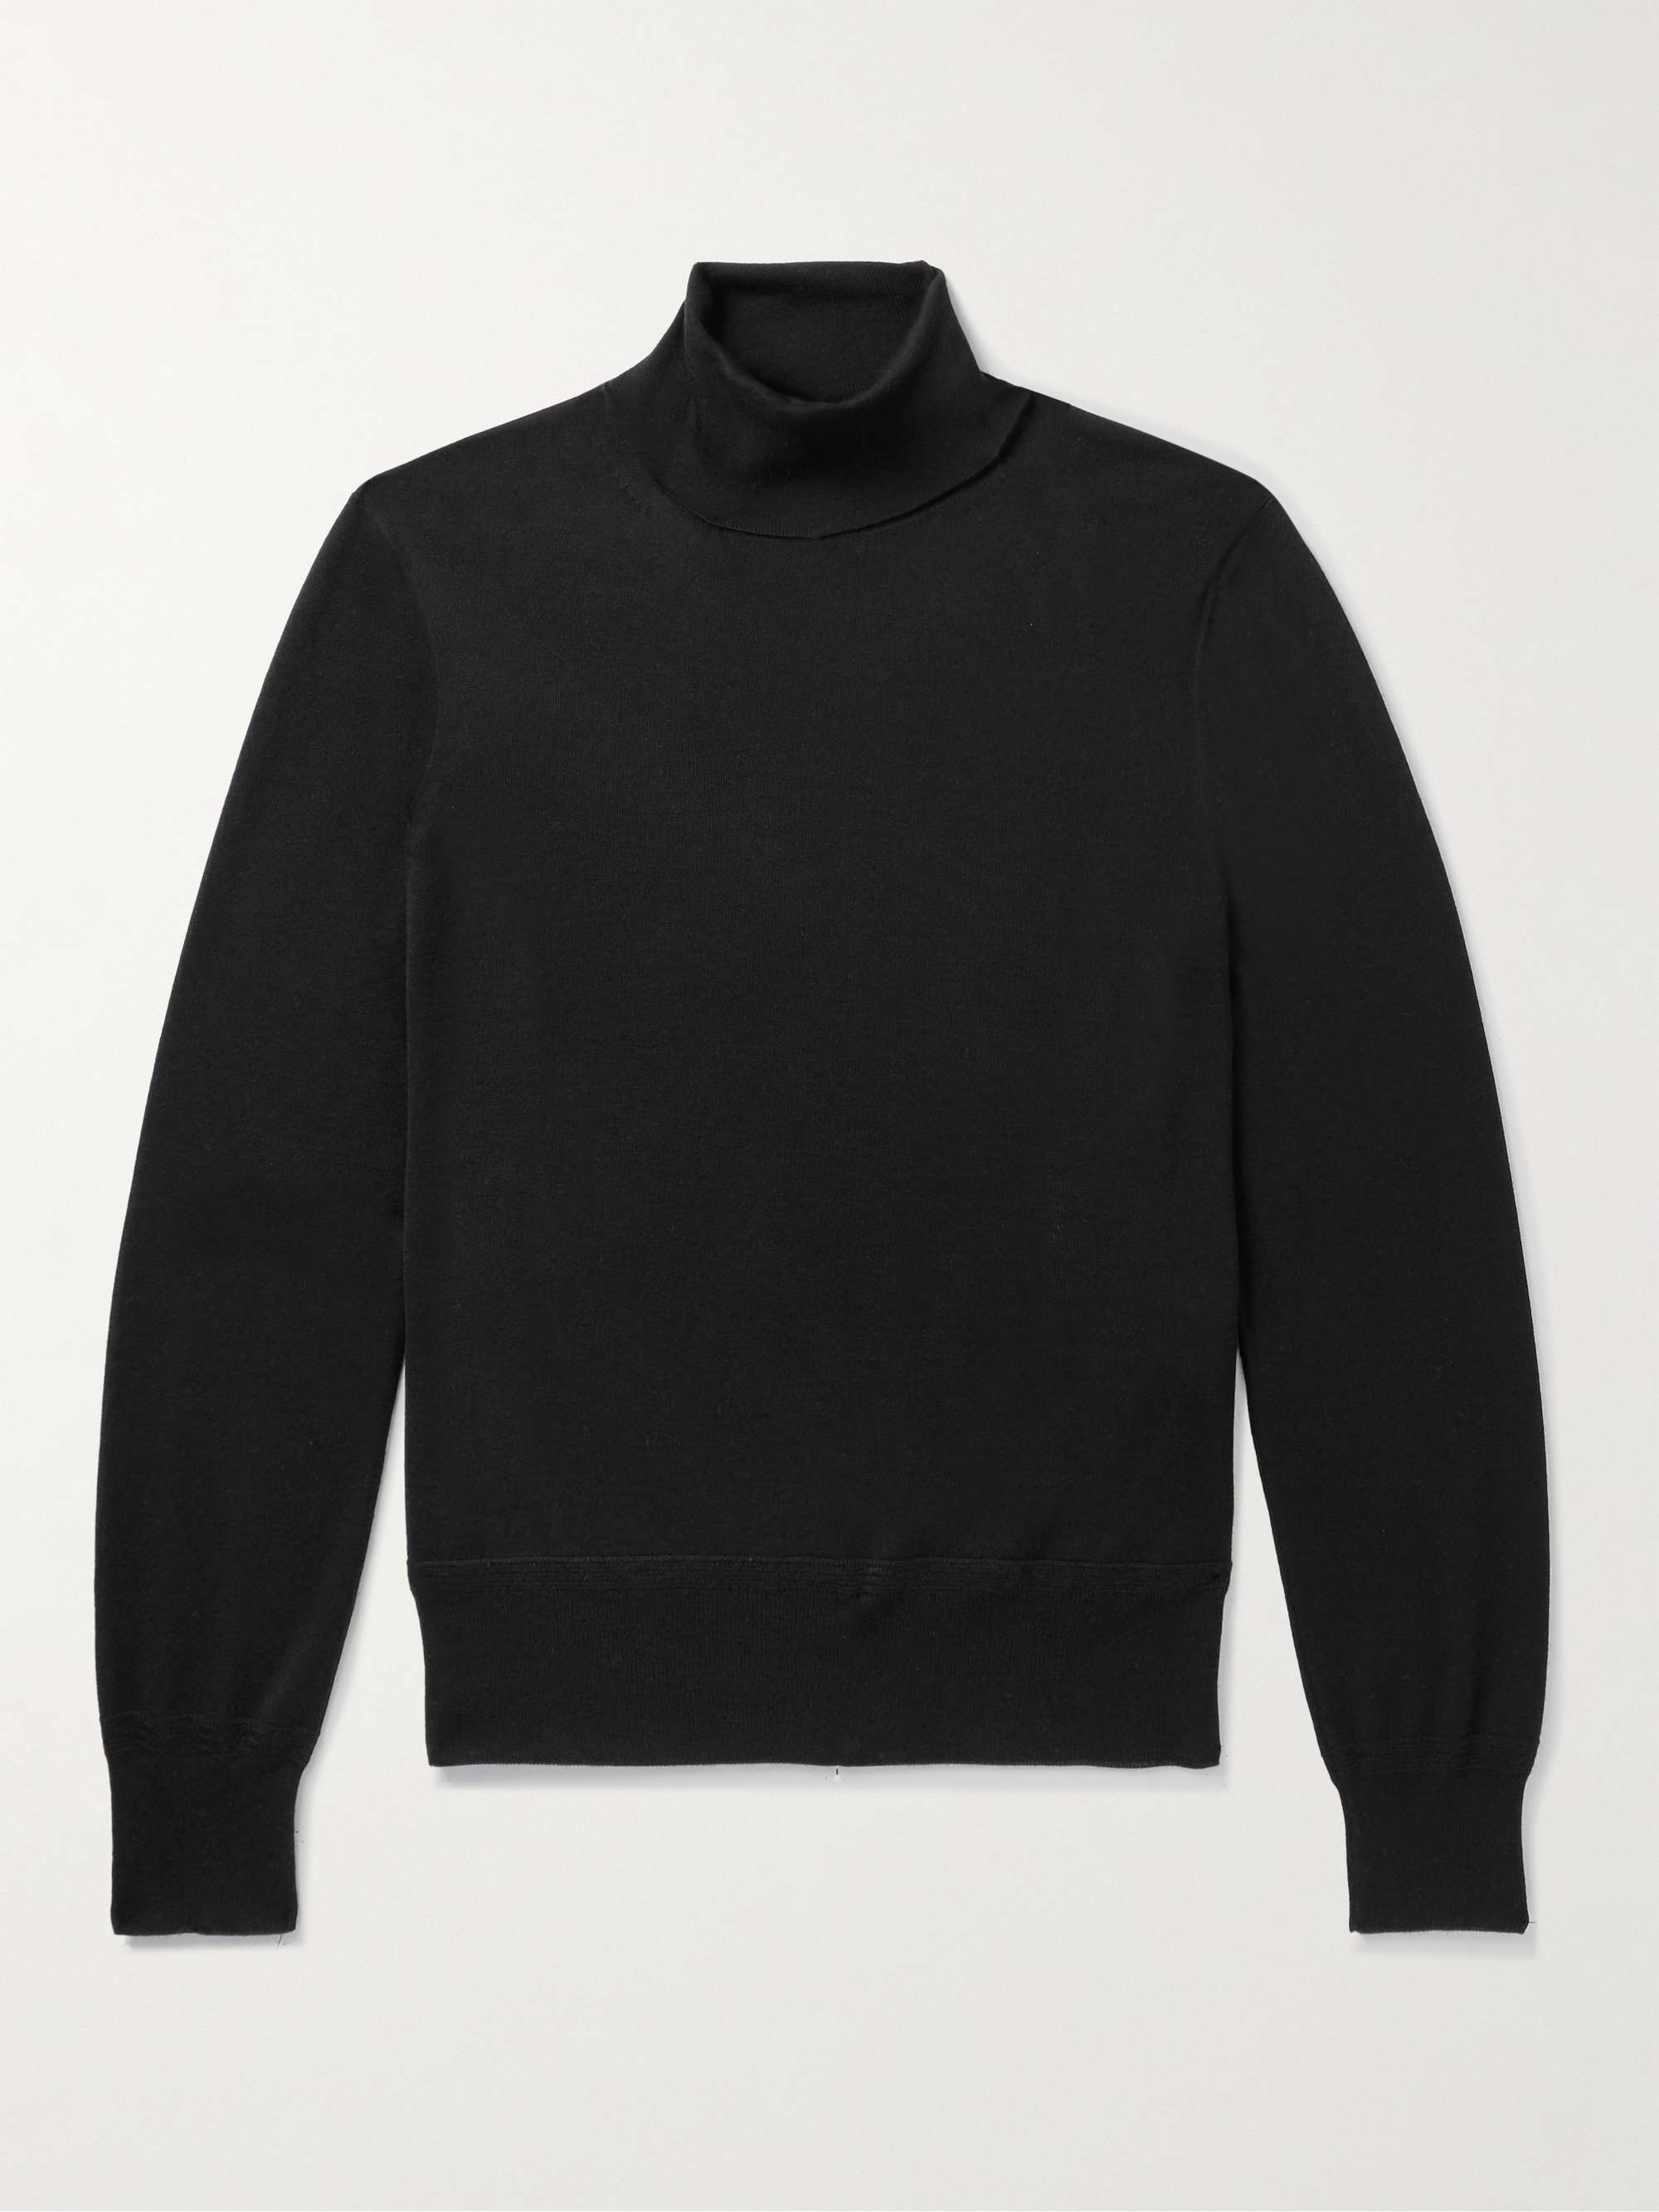 TOM FORD Cashmere and Silk-Blend Rollneck Sweater for Men | MR PORTER